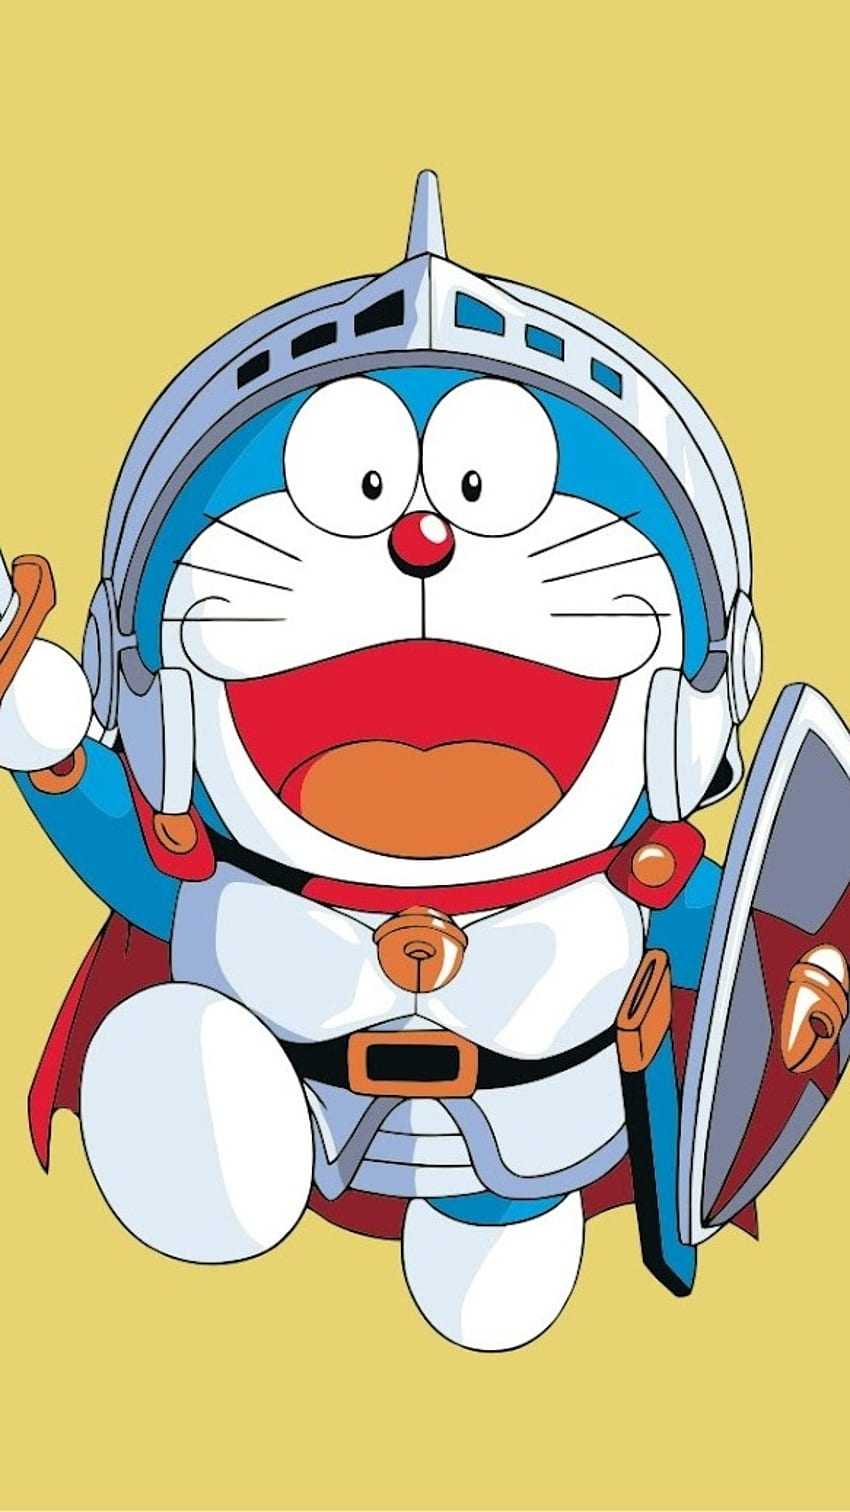 Doraemon: Hãy cùng thưởng thức những hình ảnh đáng yêu của chú mèo máy Doraemon và những câu chuyện hài hước trong series manga đình đám này.